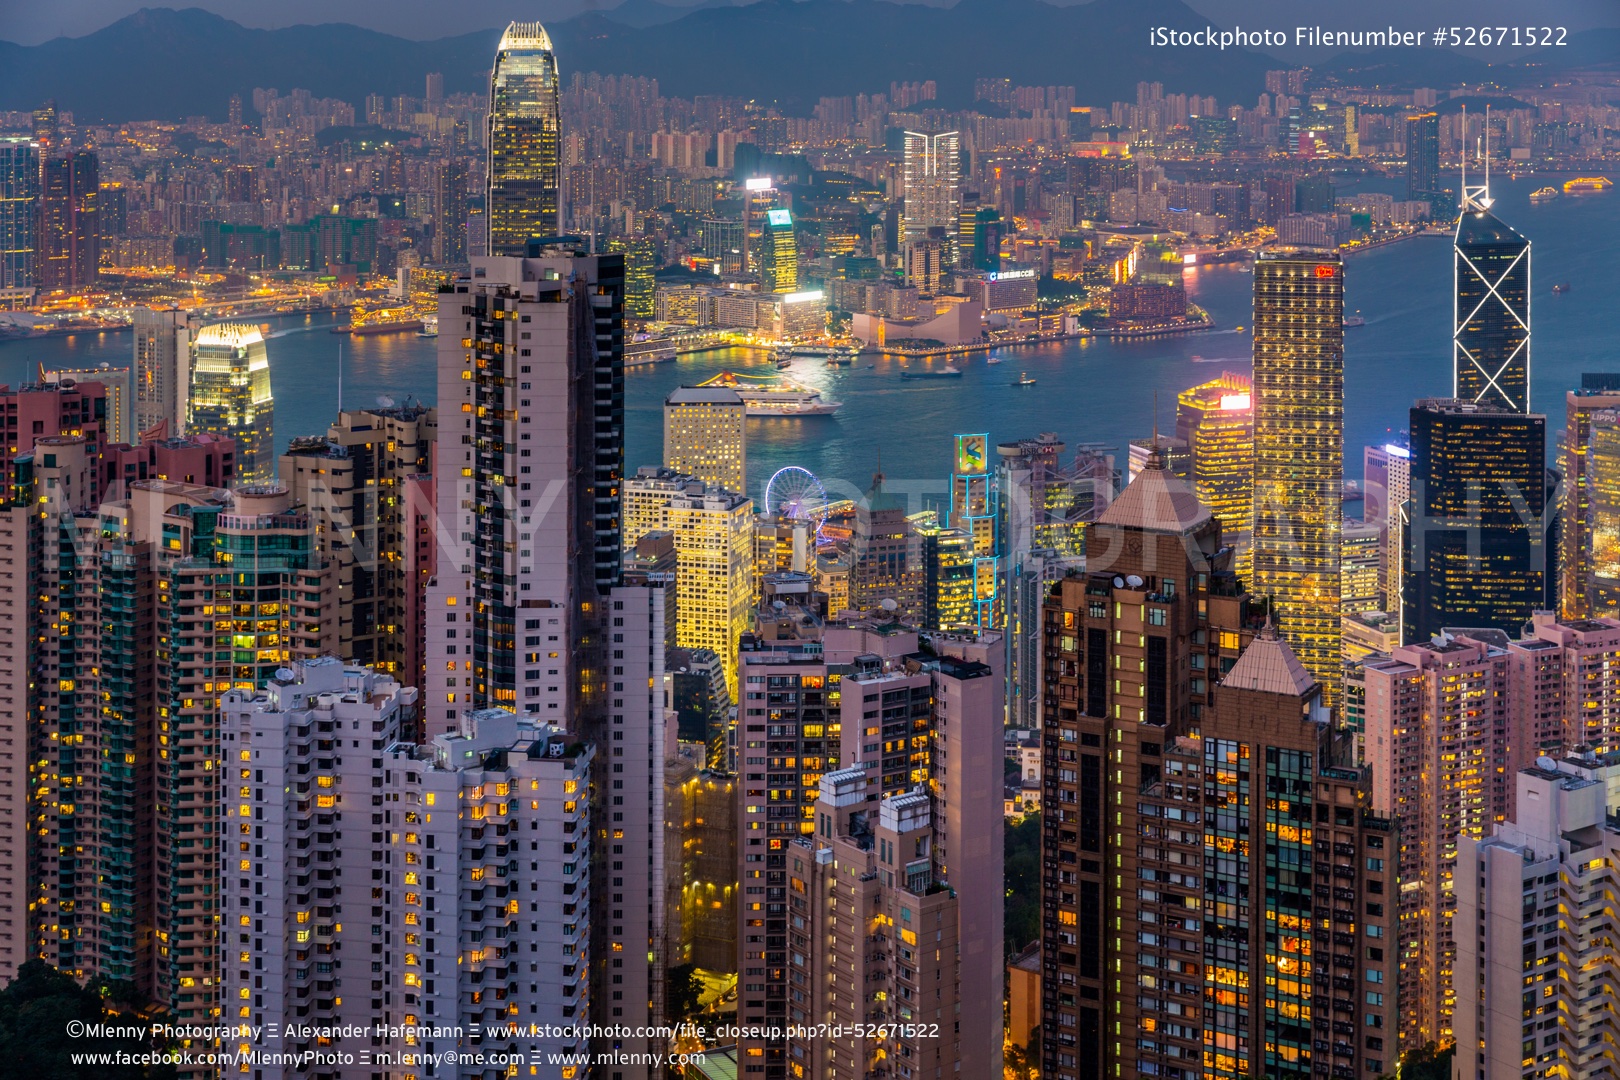 Hong Kong City at Night